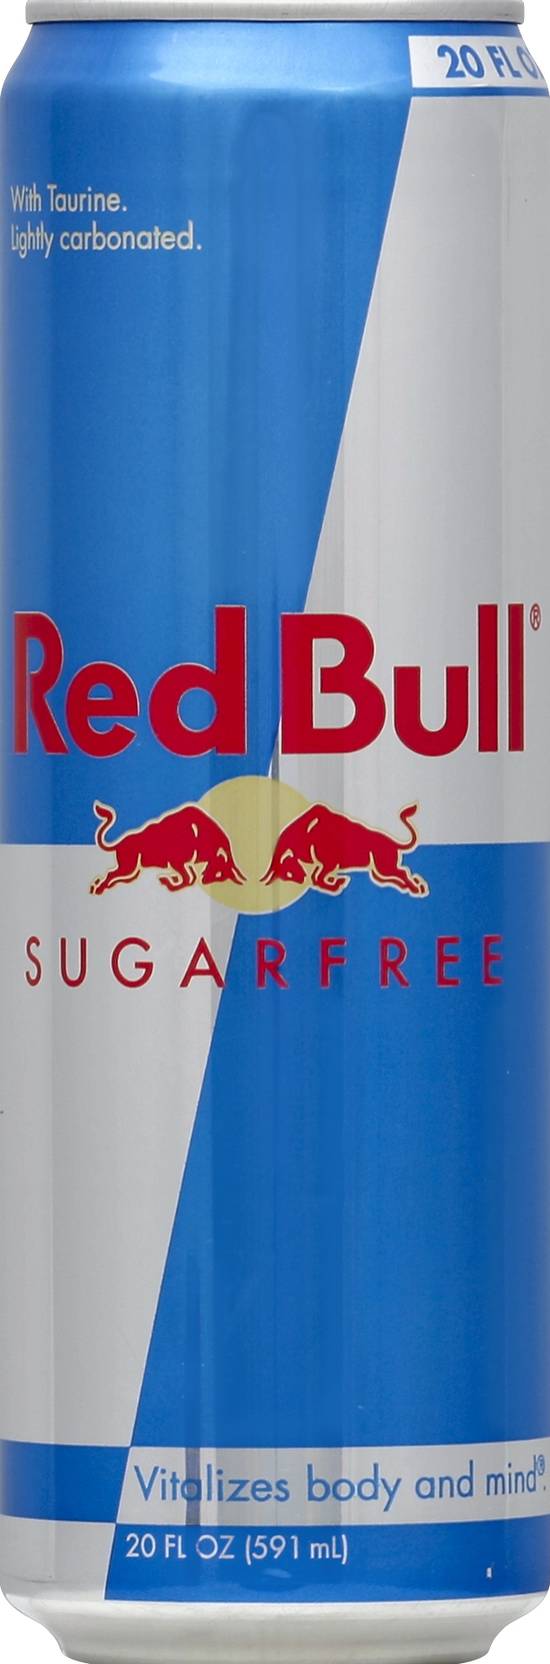 Red Bull Sugar Free Energy Drink (20 fl oz)